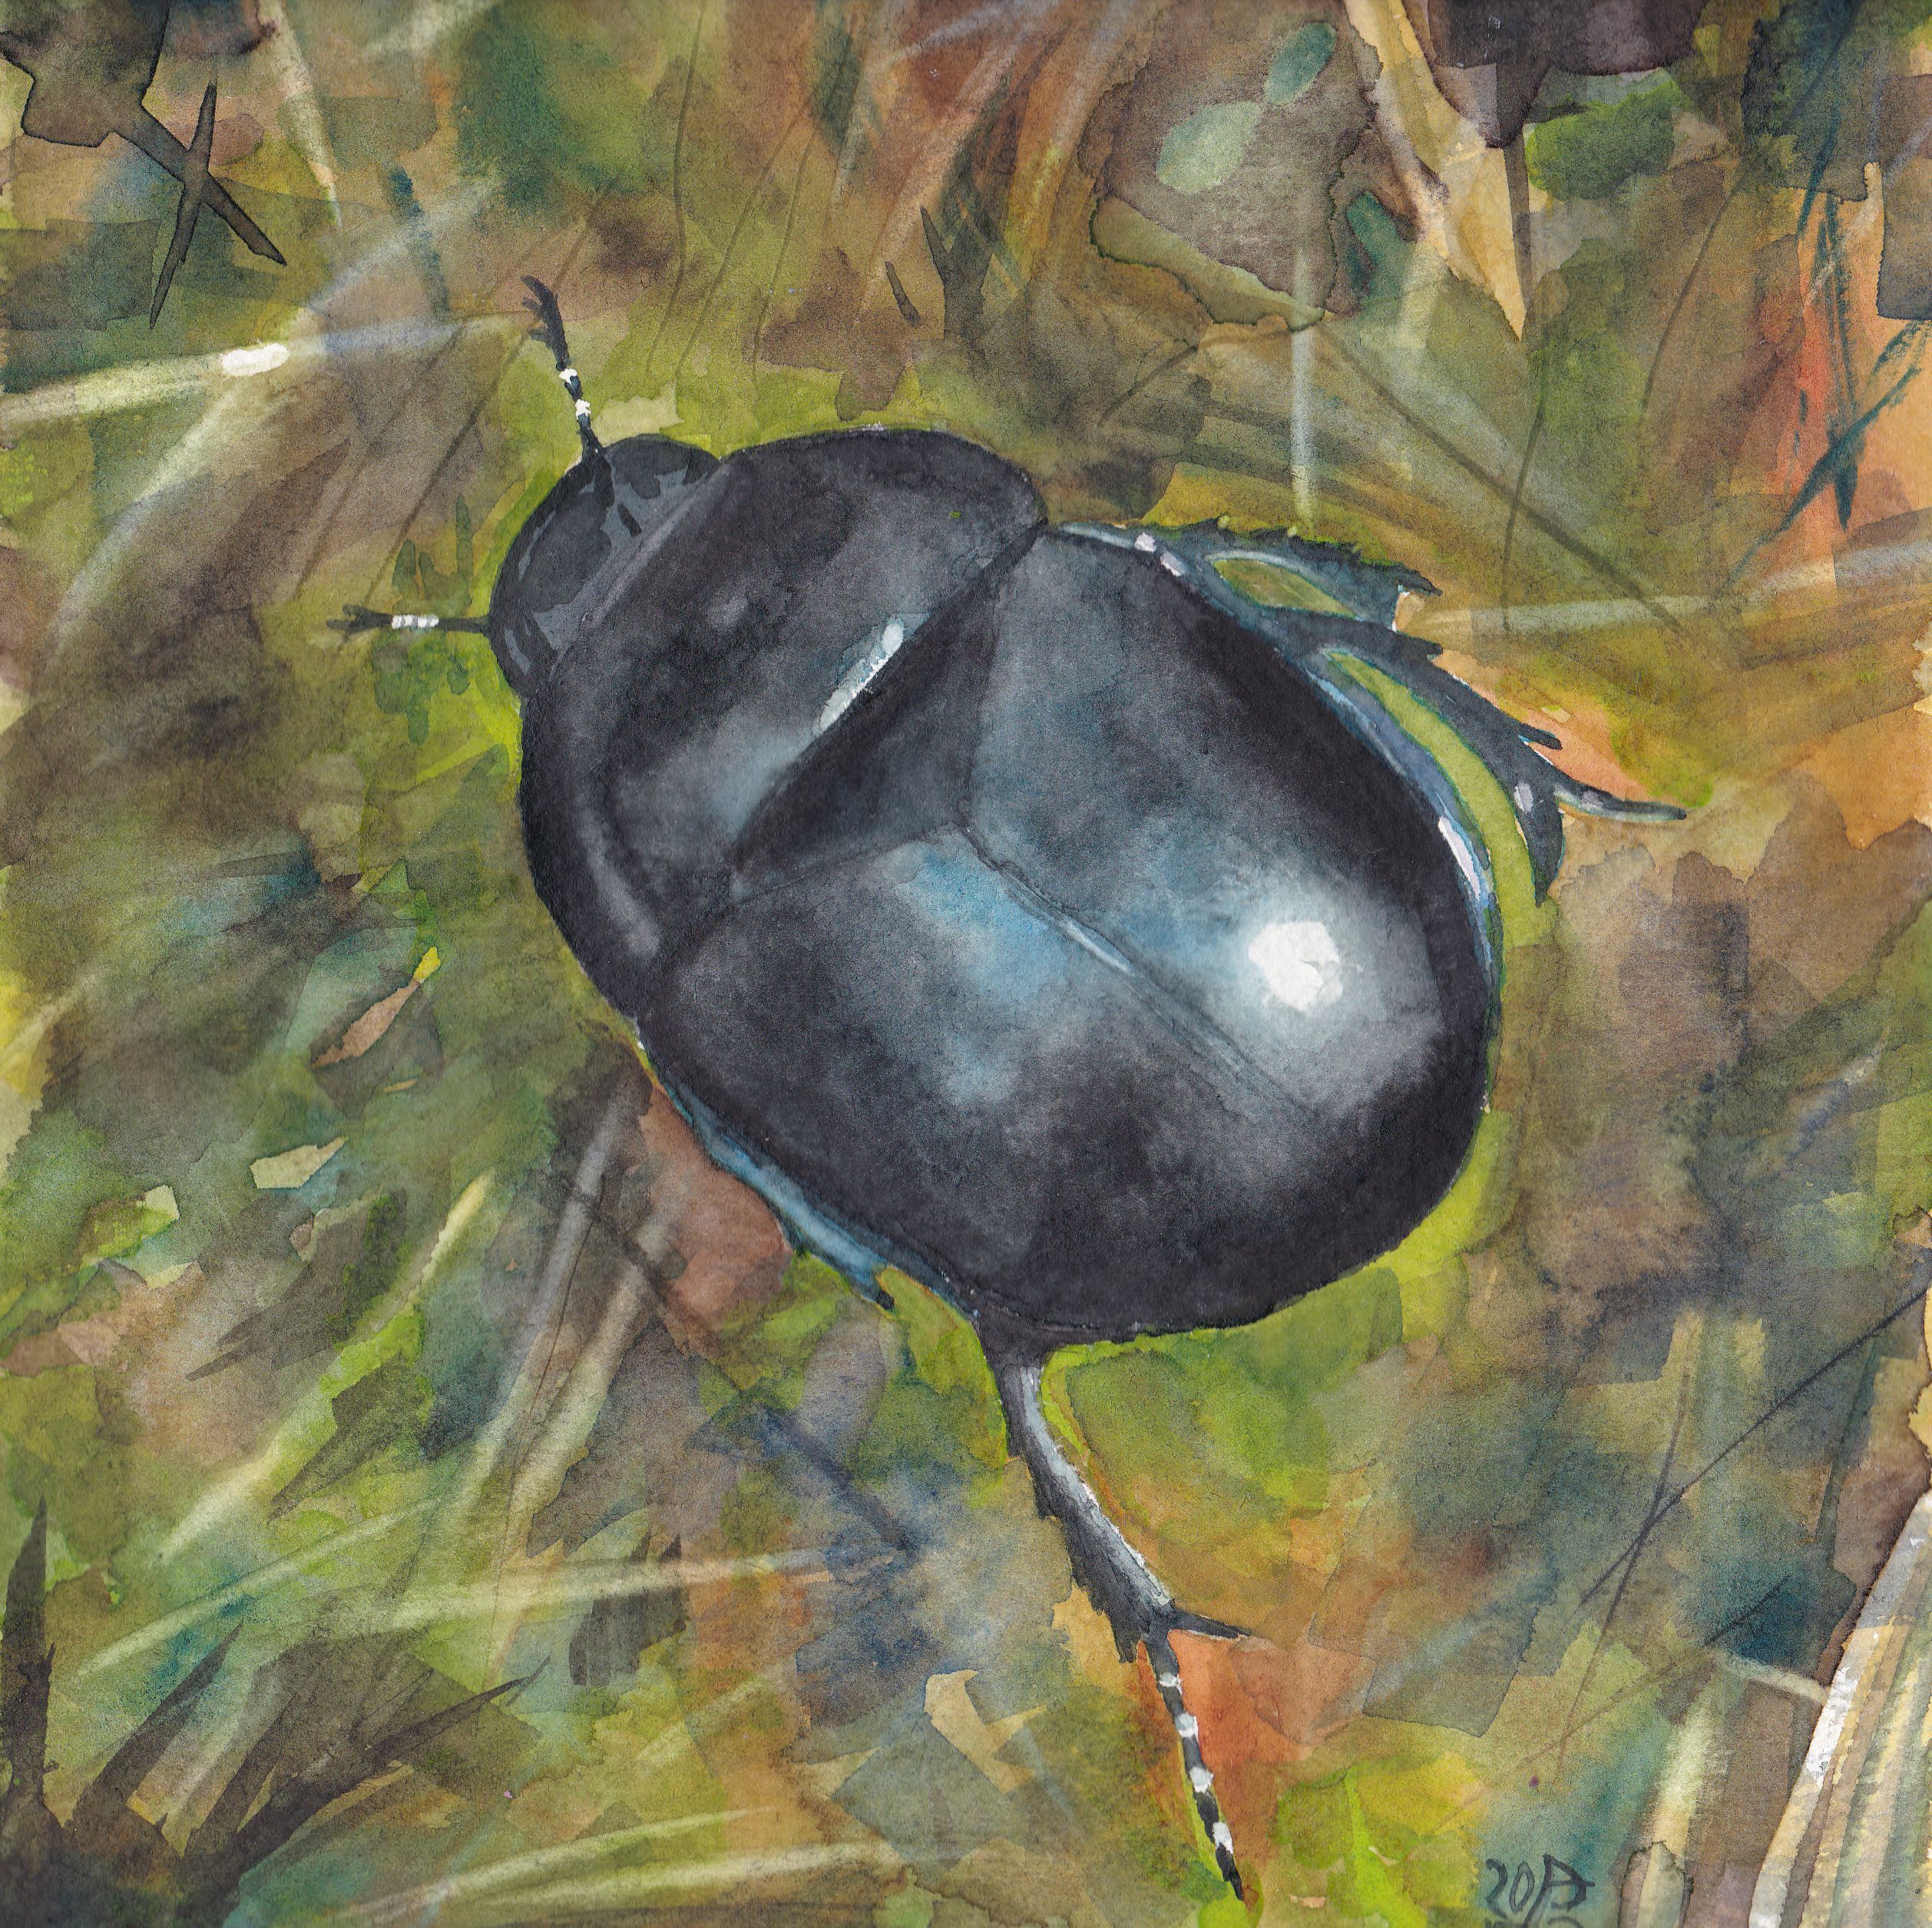 Autumn beetle